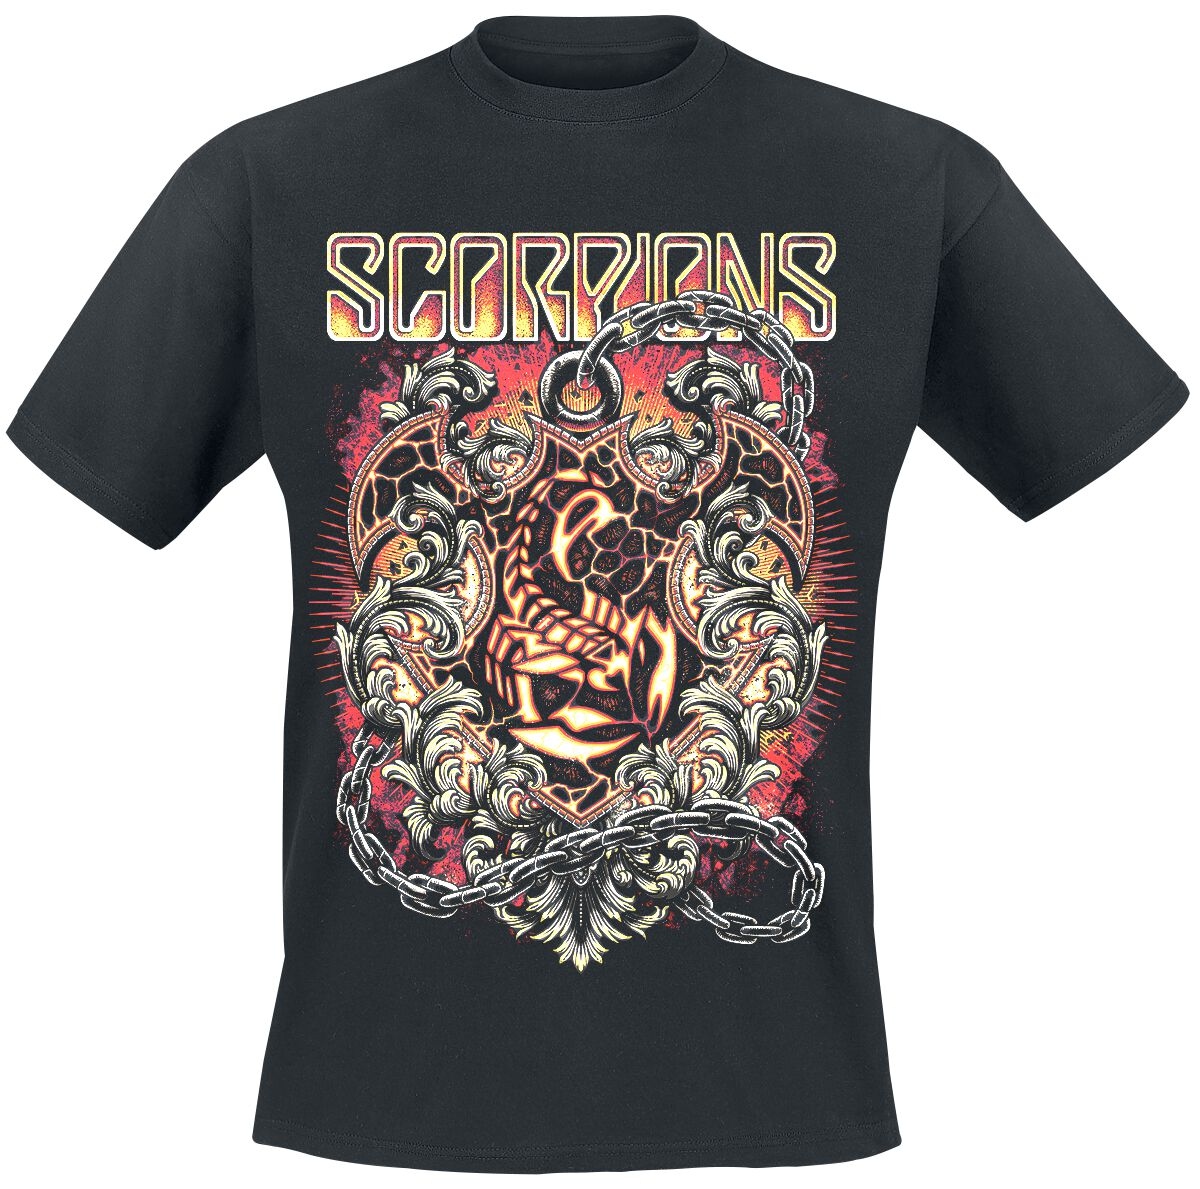 Scorpions Crest In Chains T-Shirt schwarz in M